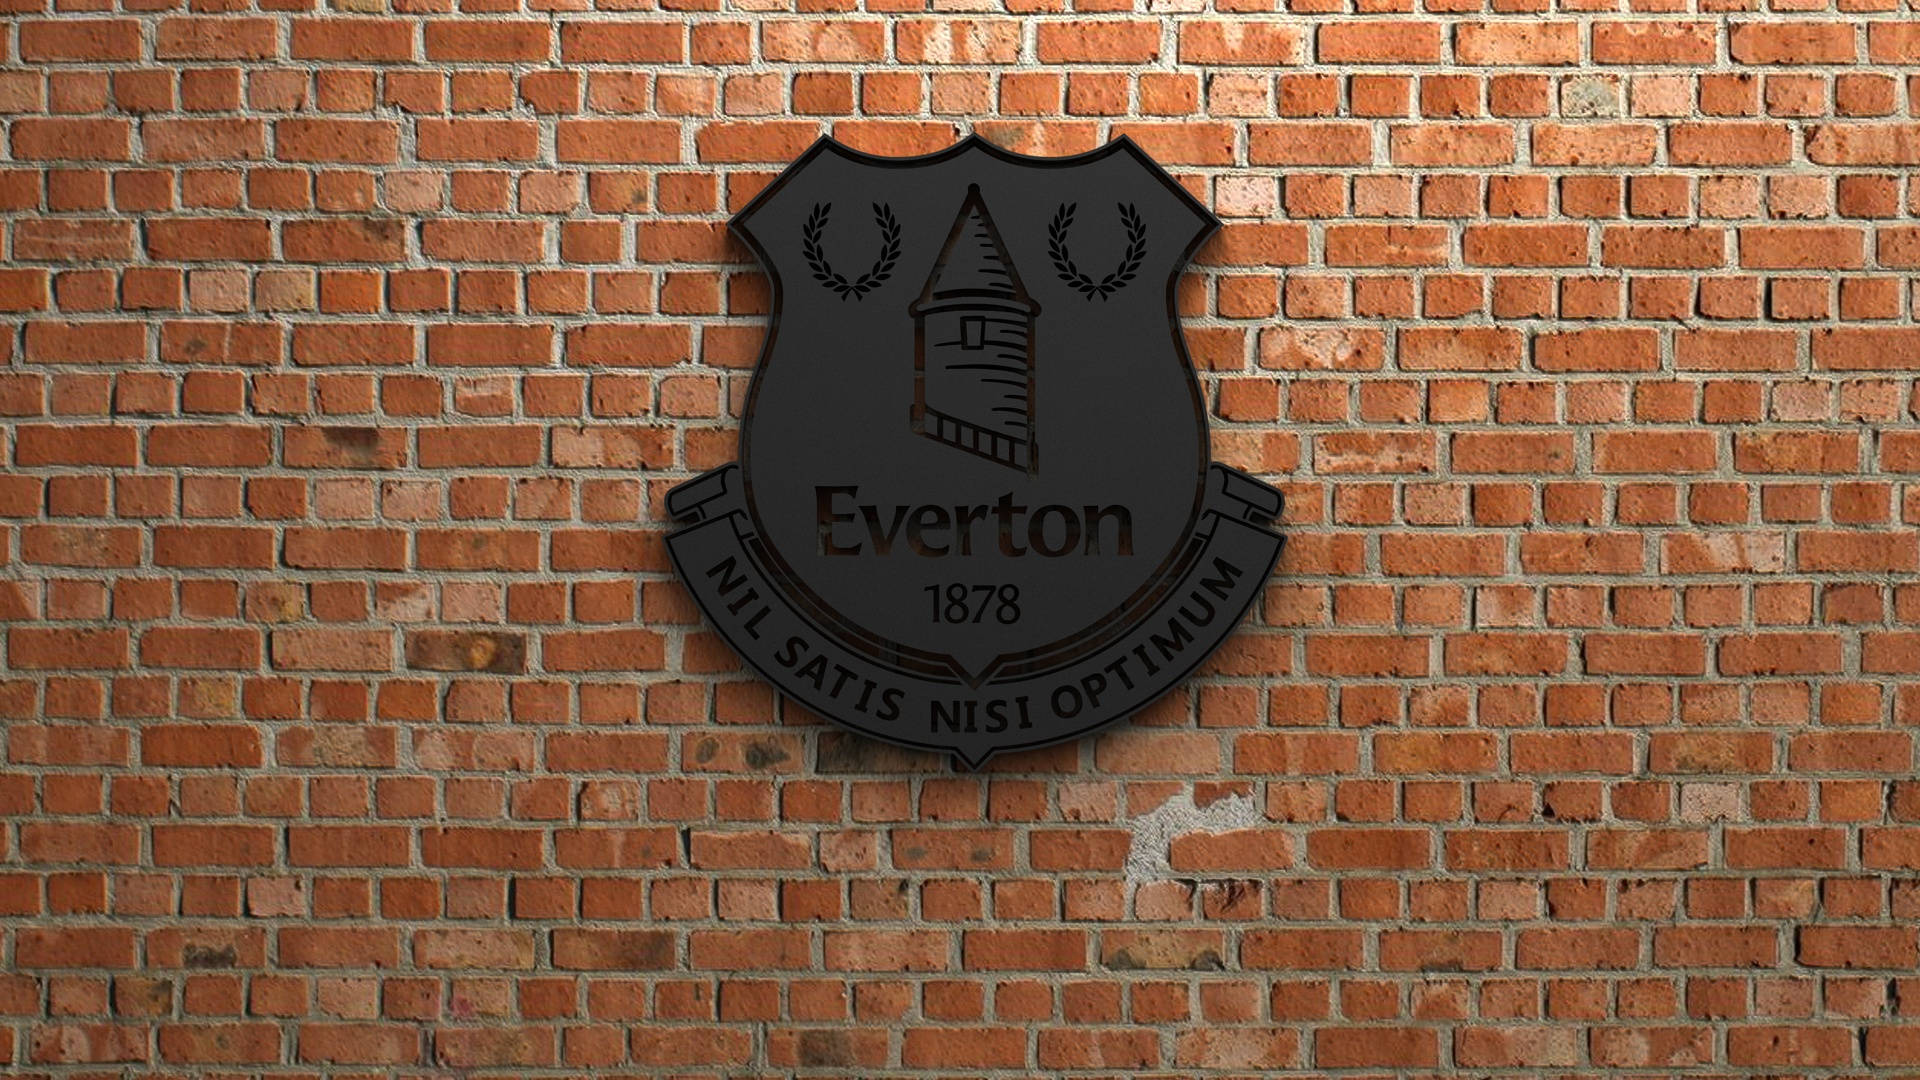 Evertonf.c. An Einer Ziegelwand Wallpaper